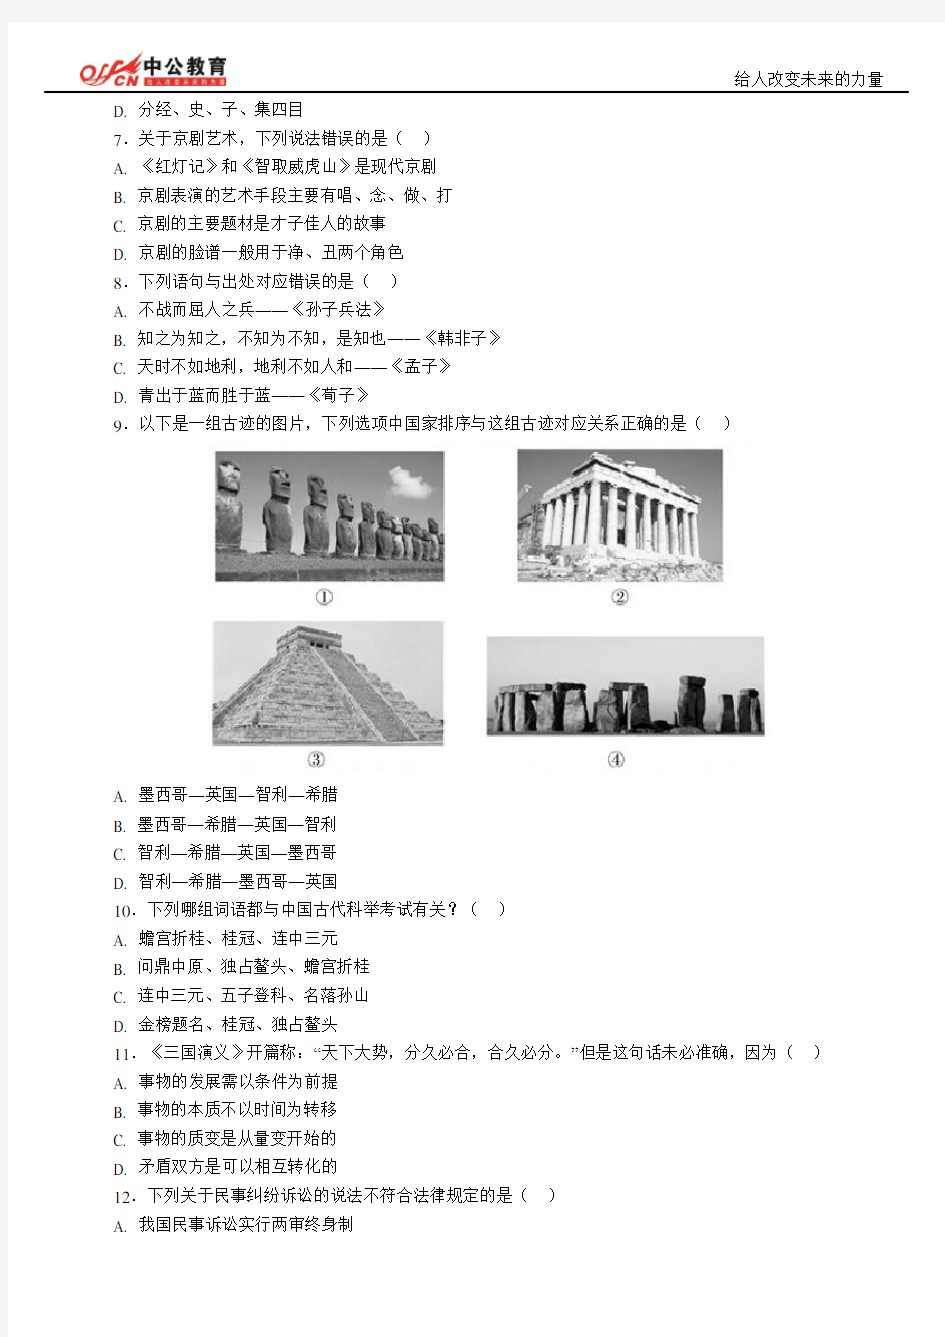 2013年四川省公务员考试行测真题及答案解析(完整)